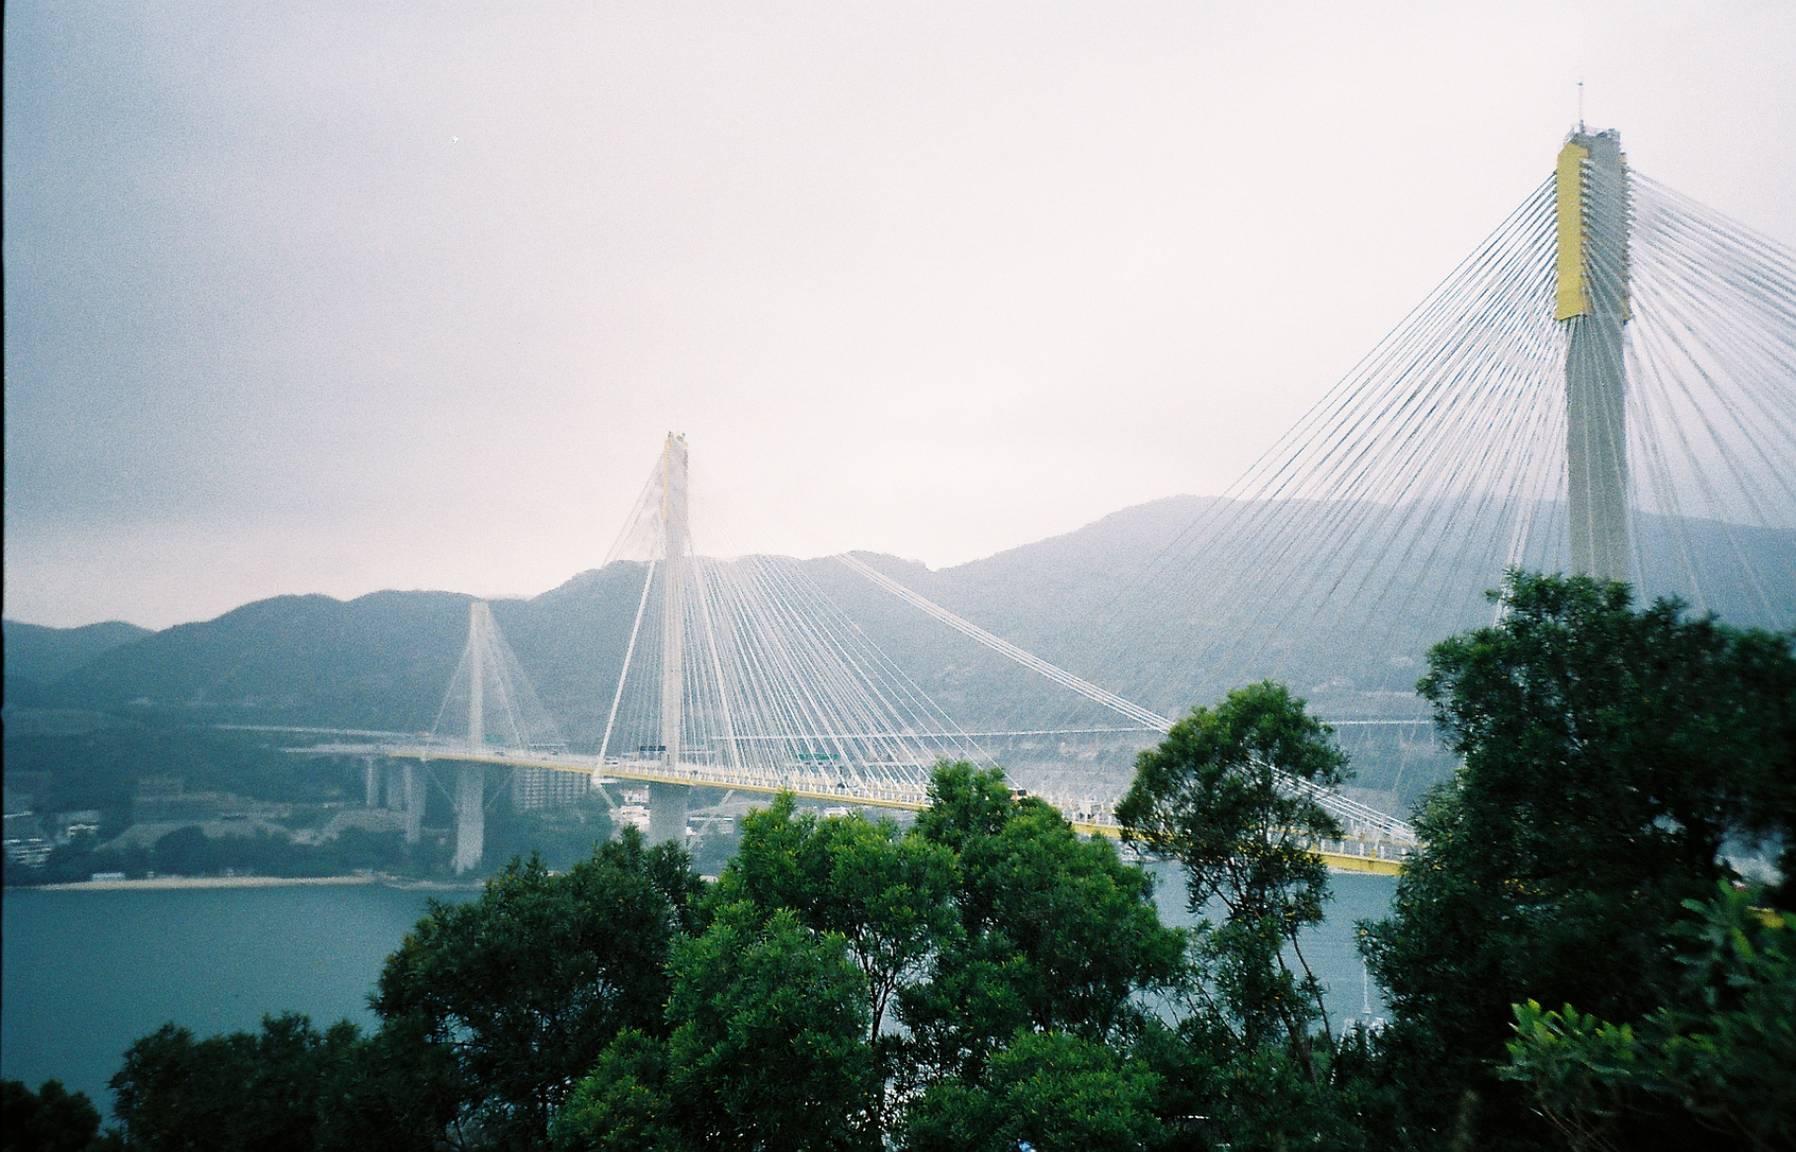 青馬觀景台 Tsing Ma Bridge Hong Kong Lomography